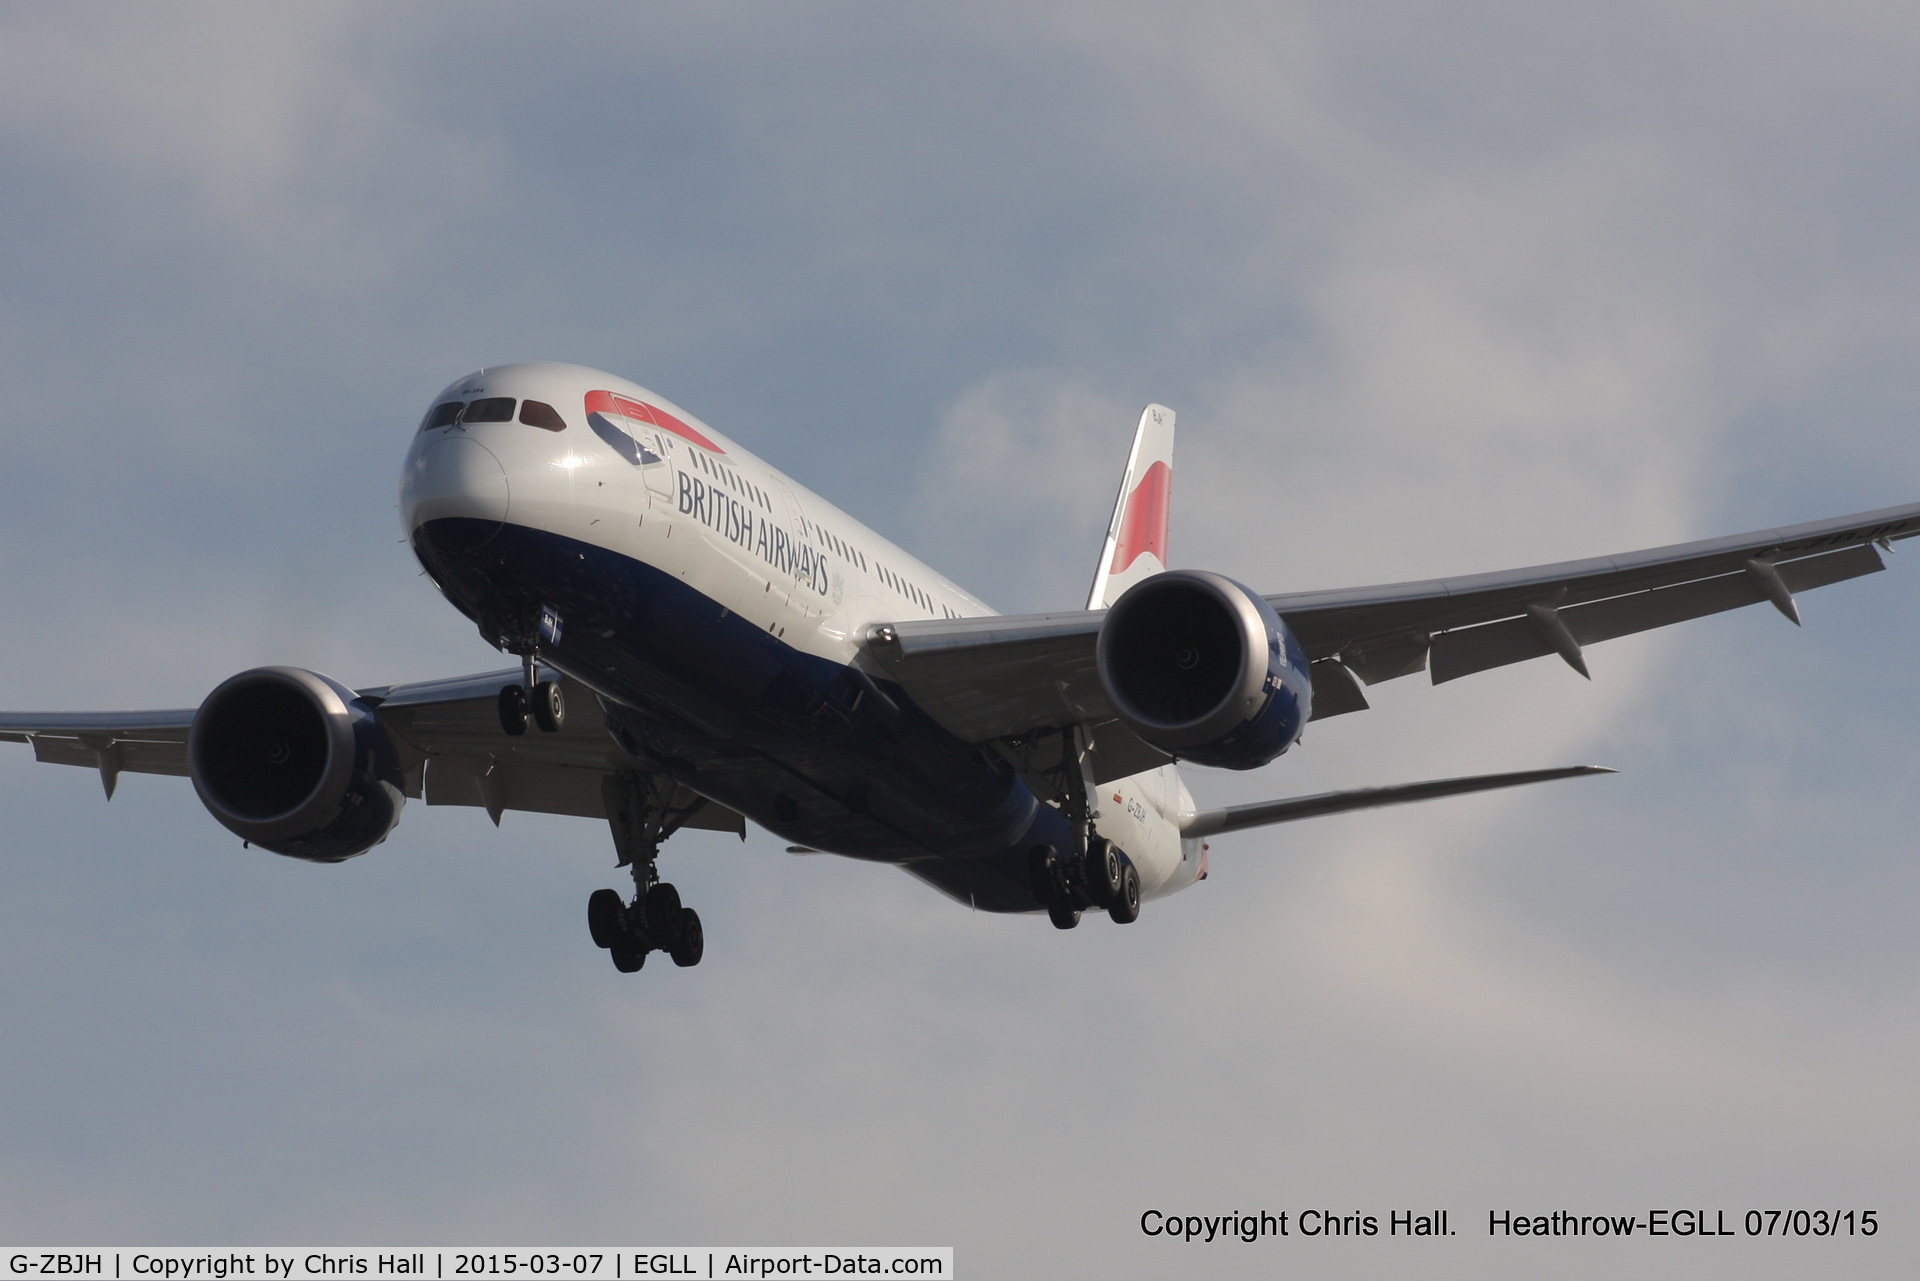 G-ZBJH, 2014 Boeing 787-8 Dreamliner C/N 38615, British Airways